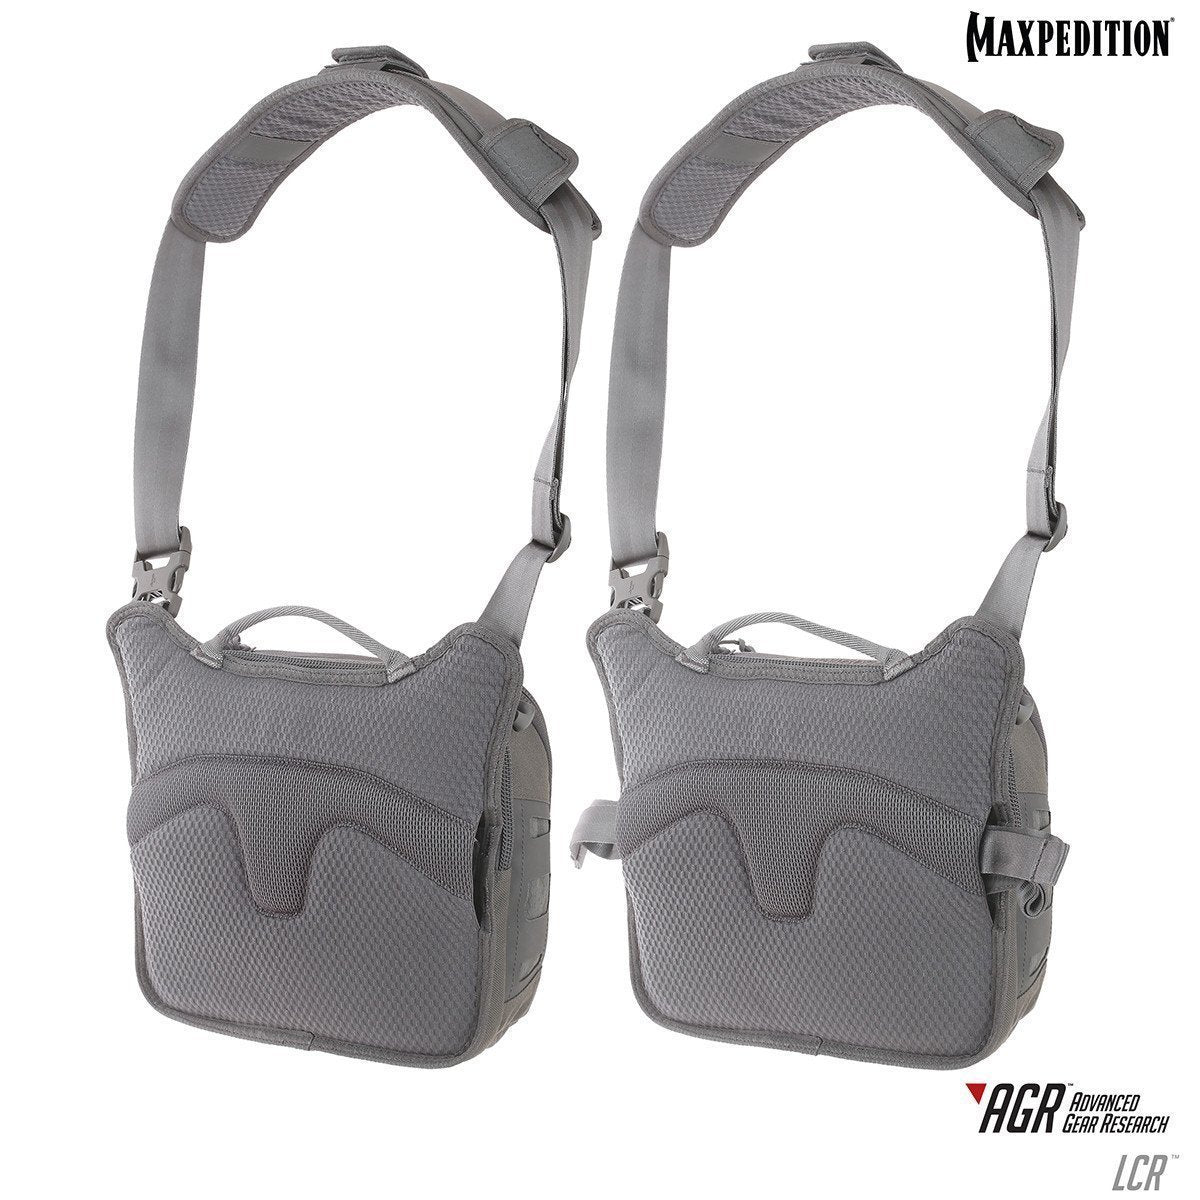 Maxpedition Lochspyr Crossbody Shoulder Bag 5.5L Bags, Packs and Cases Maxpedition Tactical Gear Supplier Tactical Distributors Australia